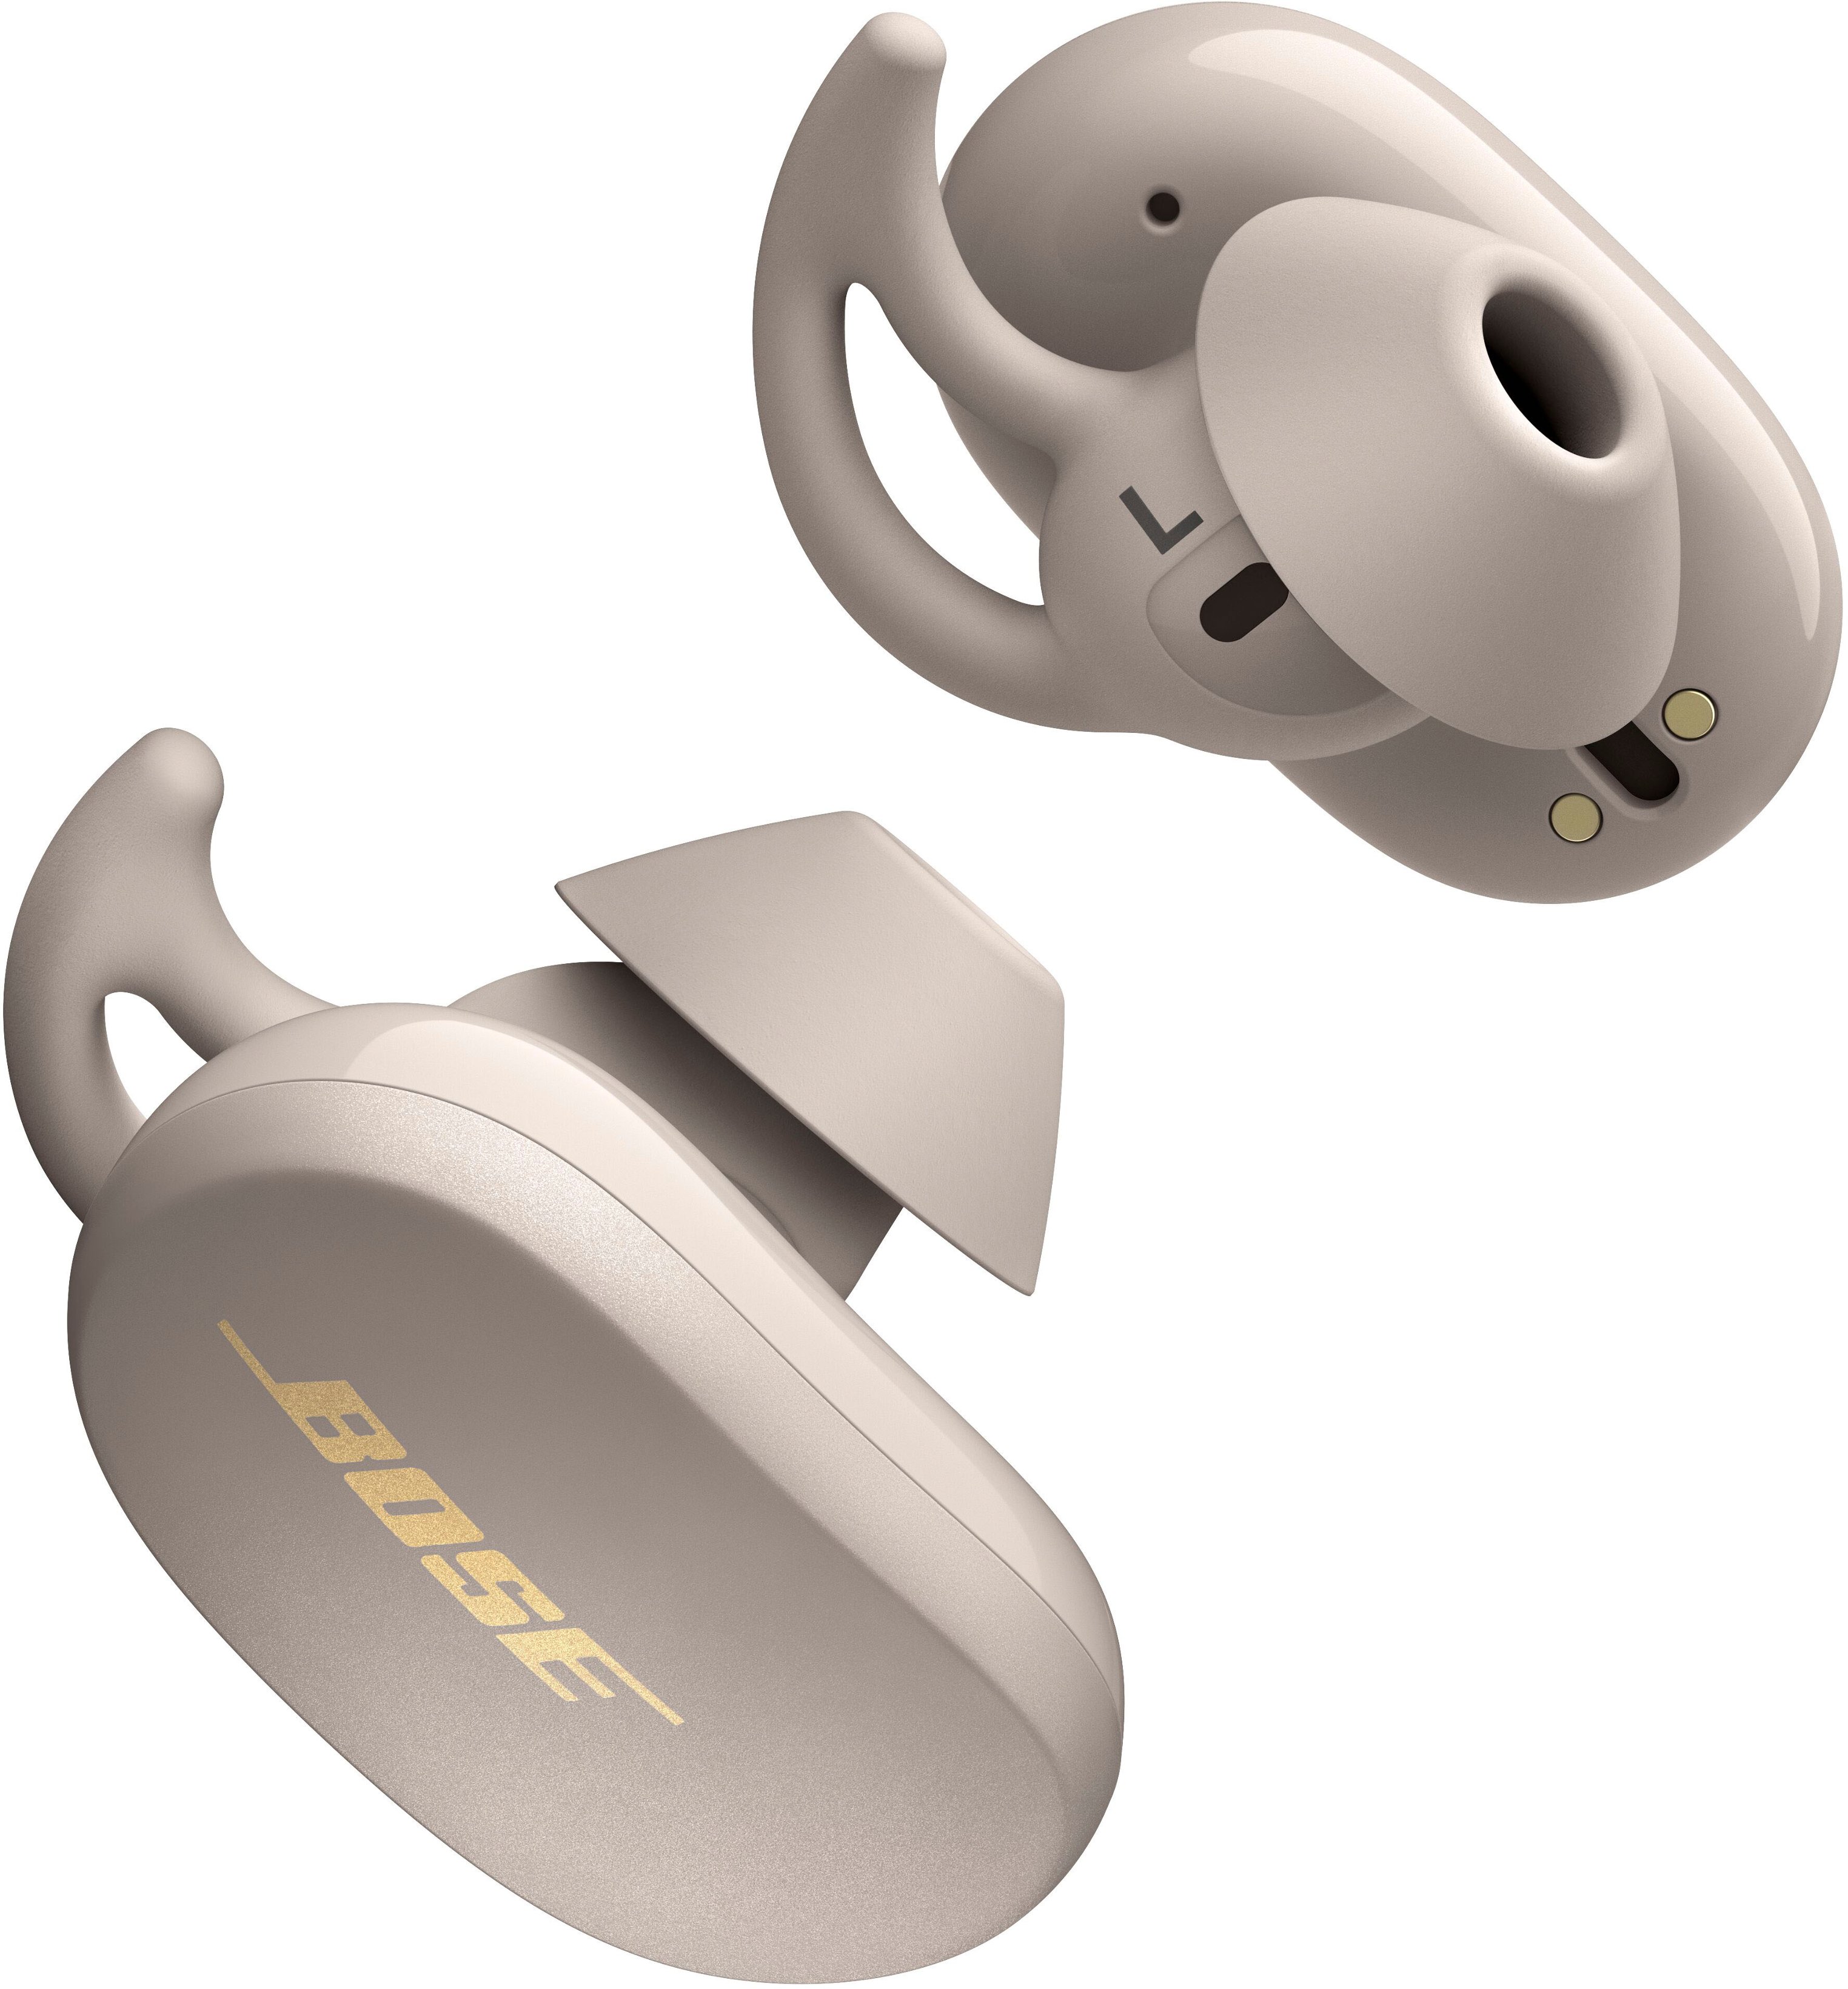 オーディオ機器 ヘッドフォン Best Buy: Bose QuietComfort Earbuds True Wireless Noise Cancelling 